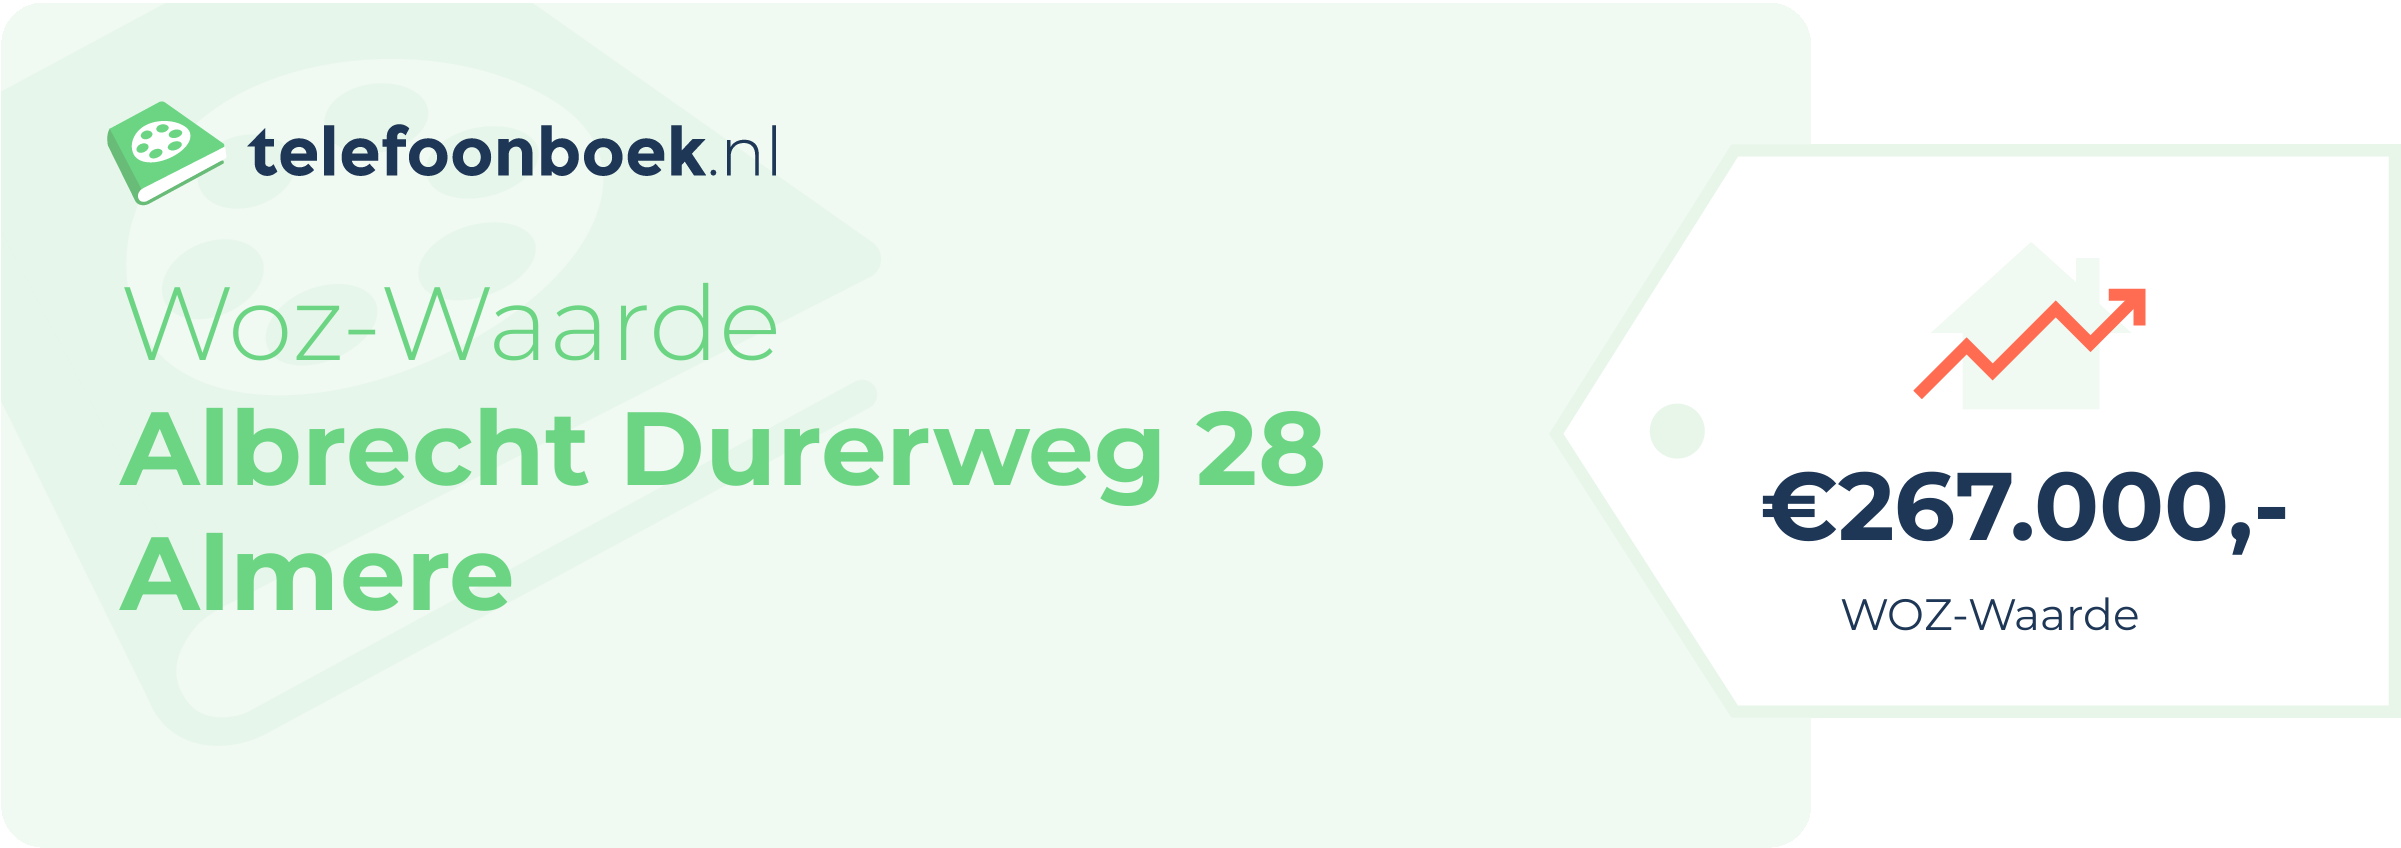 WOZ-waarde Albrecht Durerweg 28 Almere